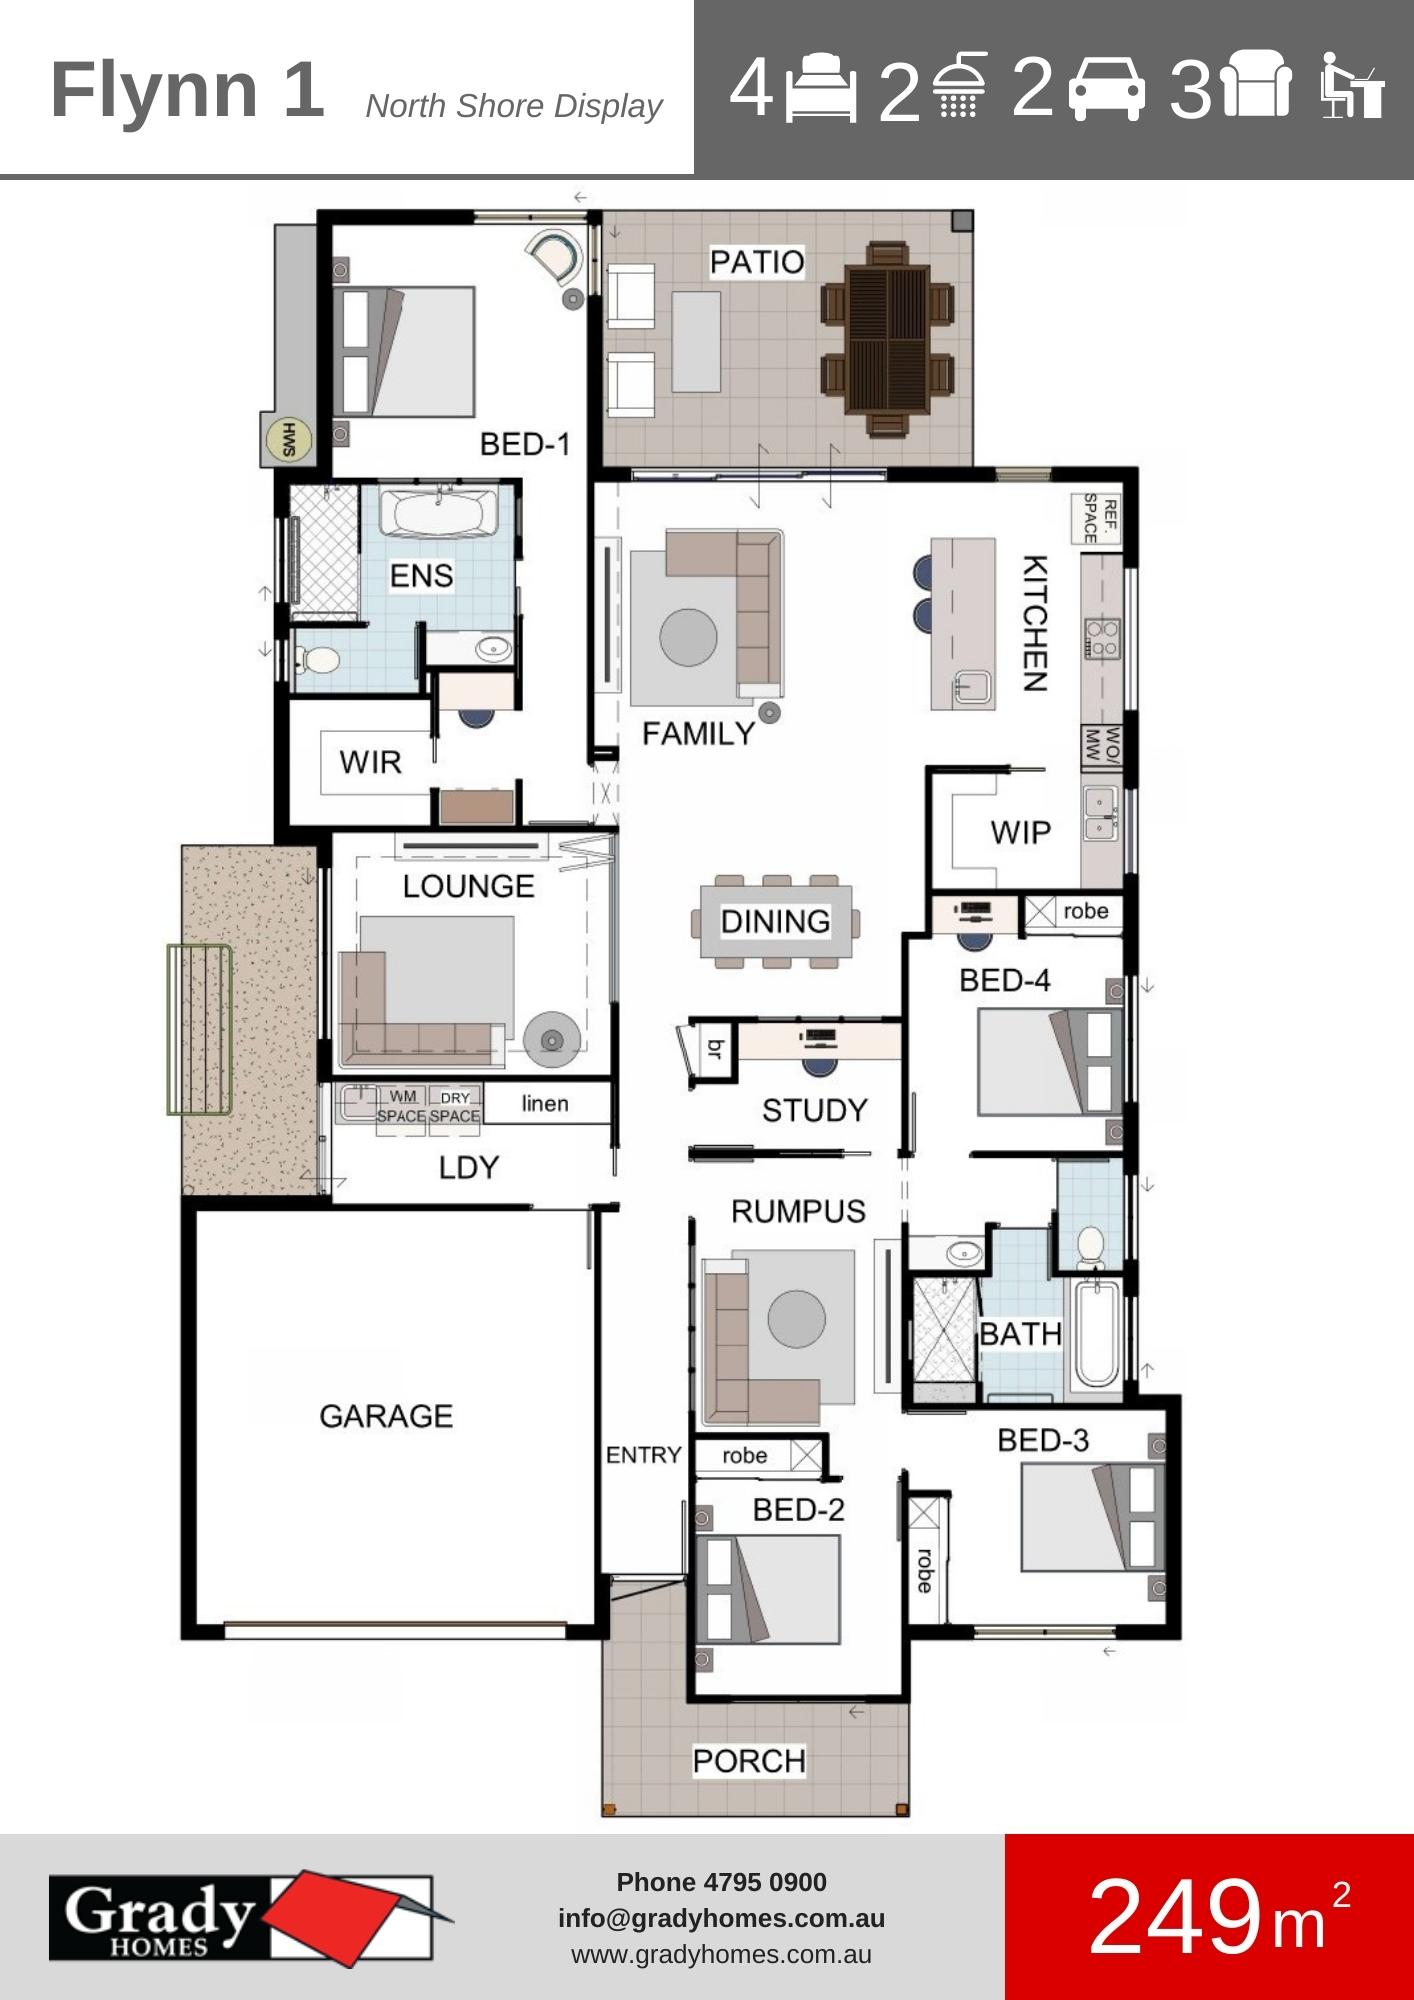 Flynn 1a - Grady Homes Floor Plan Brochure (1)